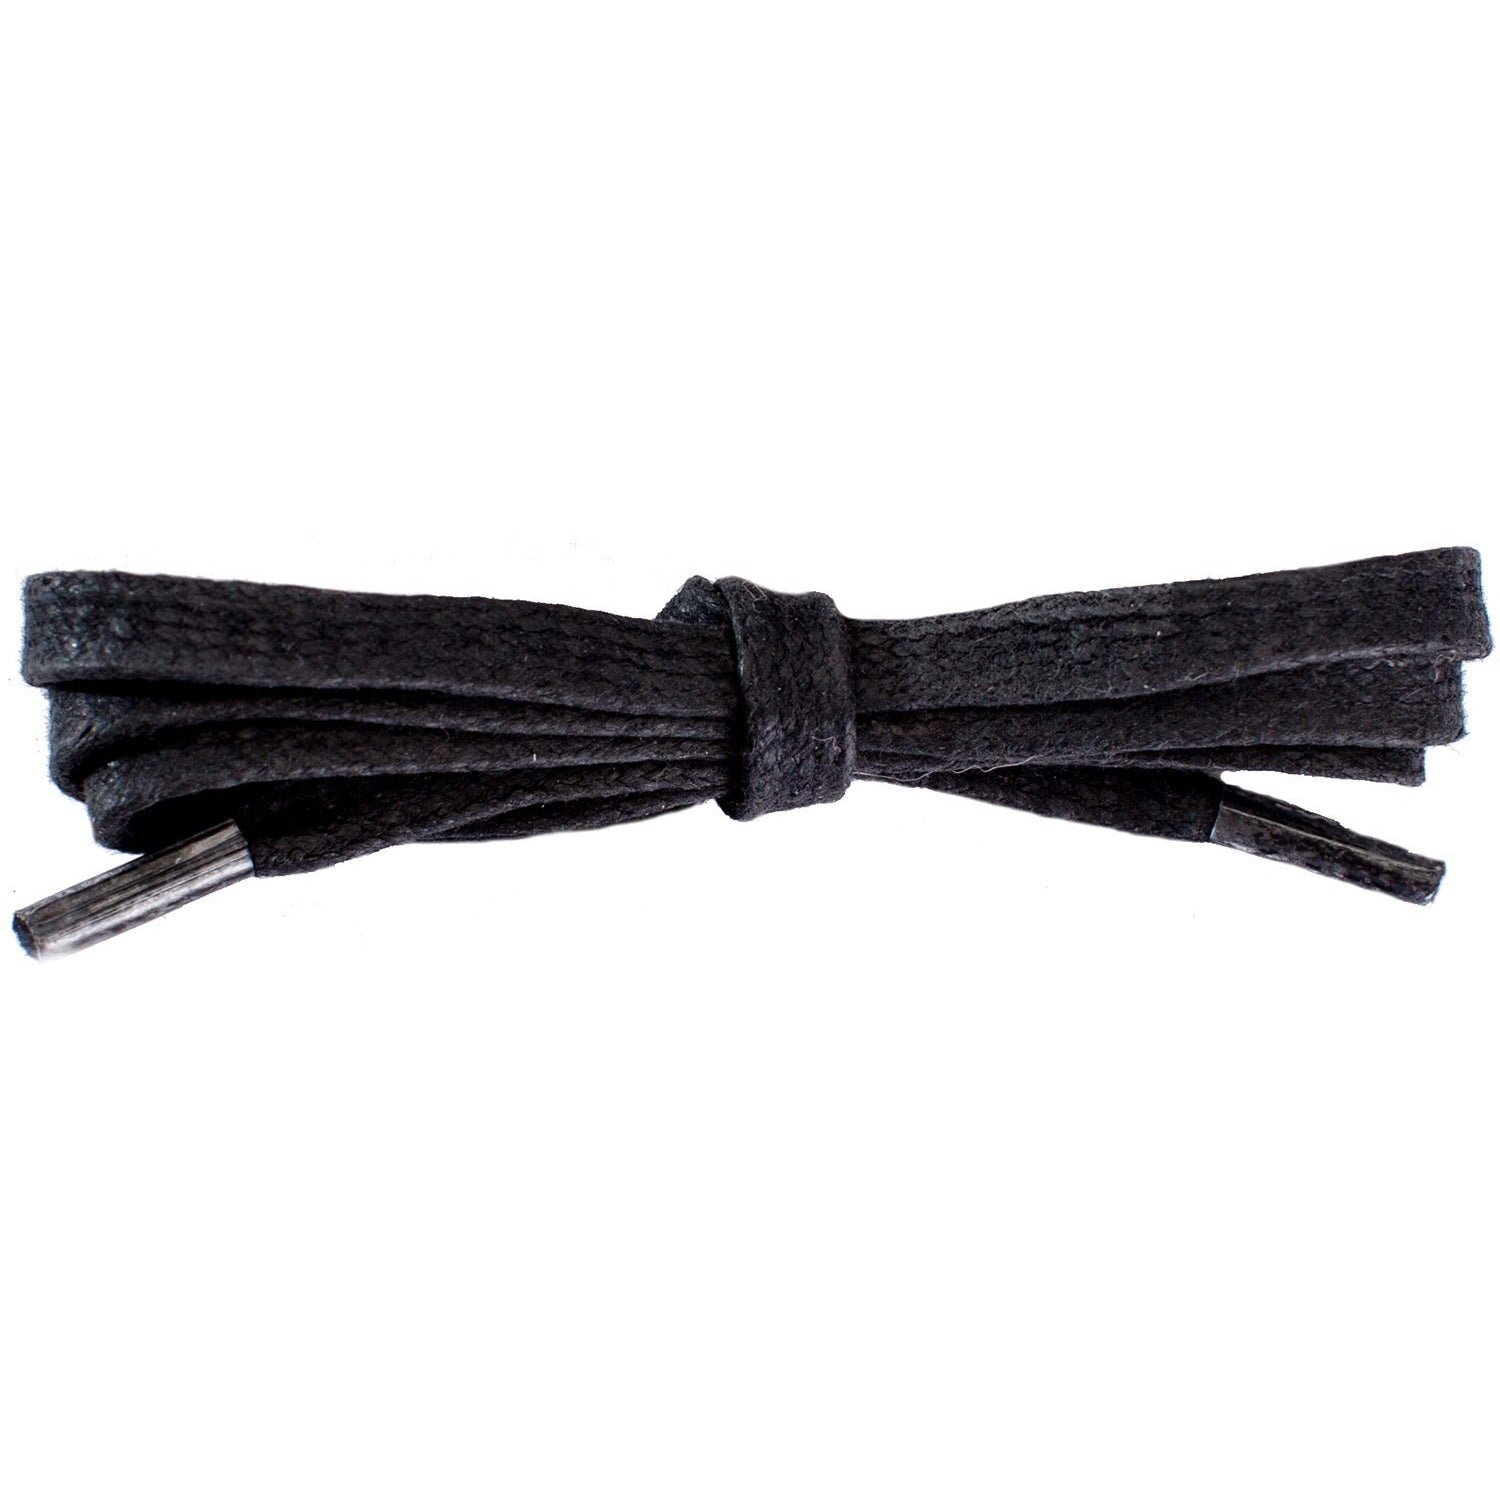 Wholesale Waxed Cotton Flat DRESS Laces 1/4'' - Black (12 Pair Pack) Shoelaces